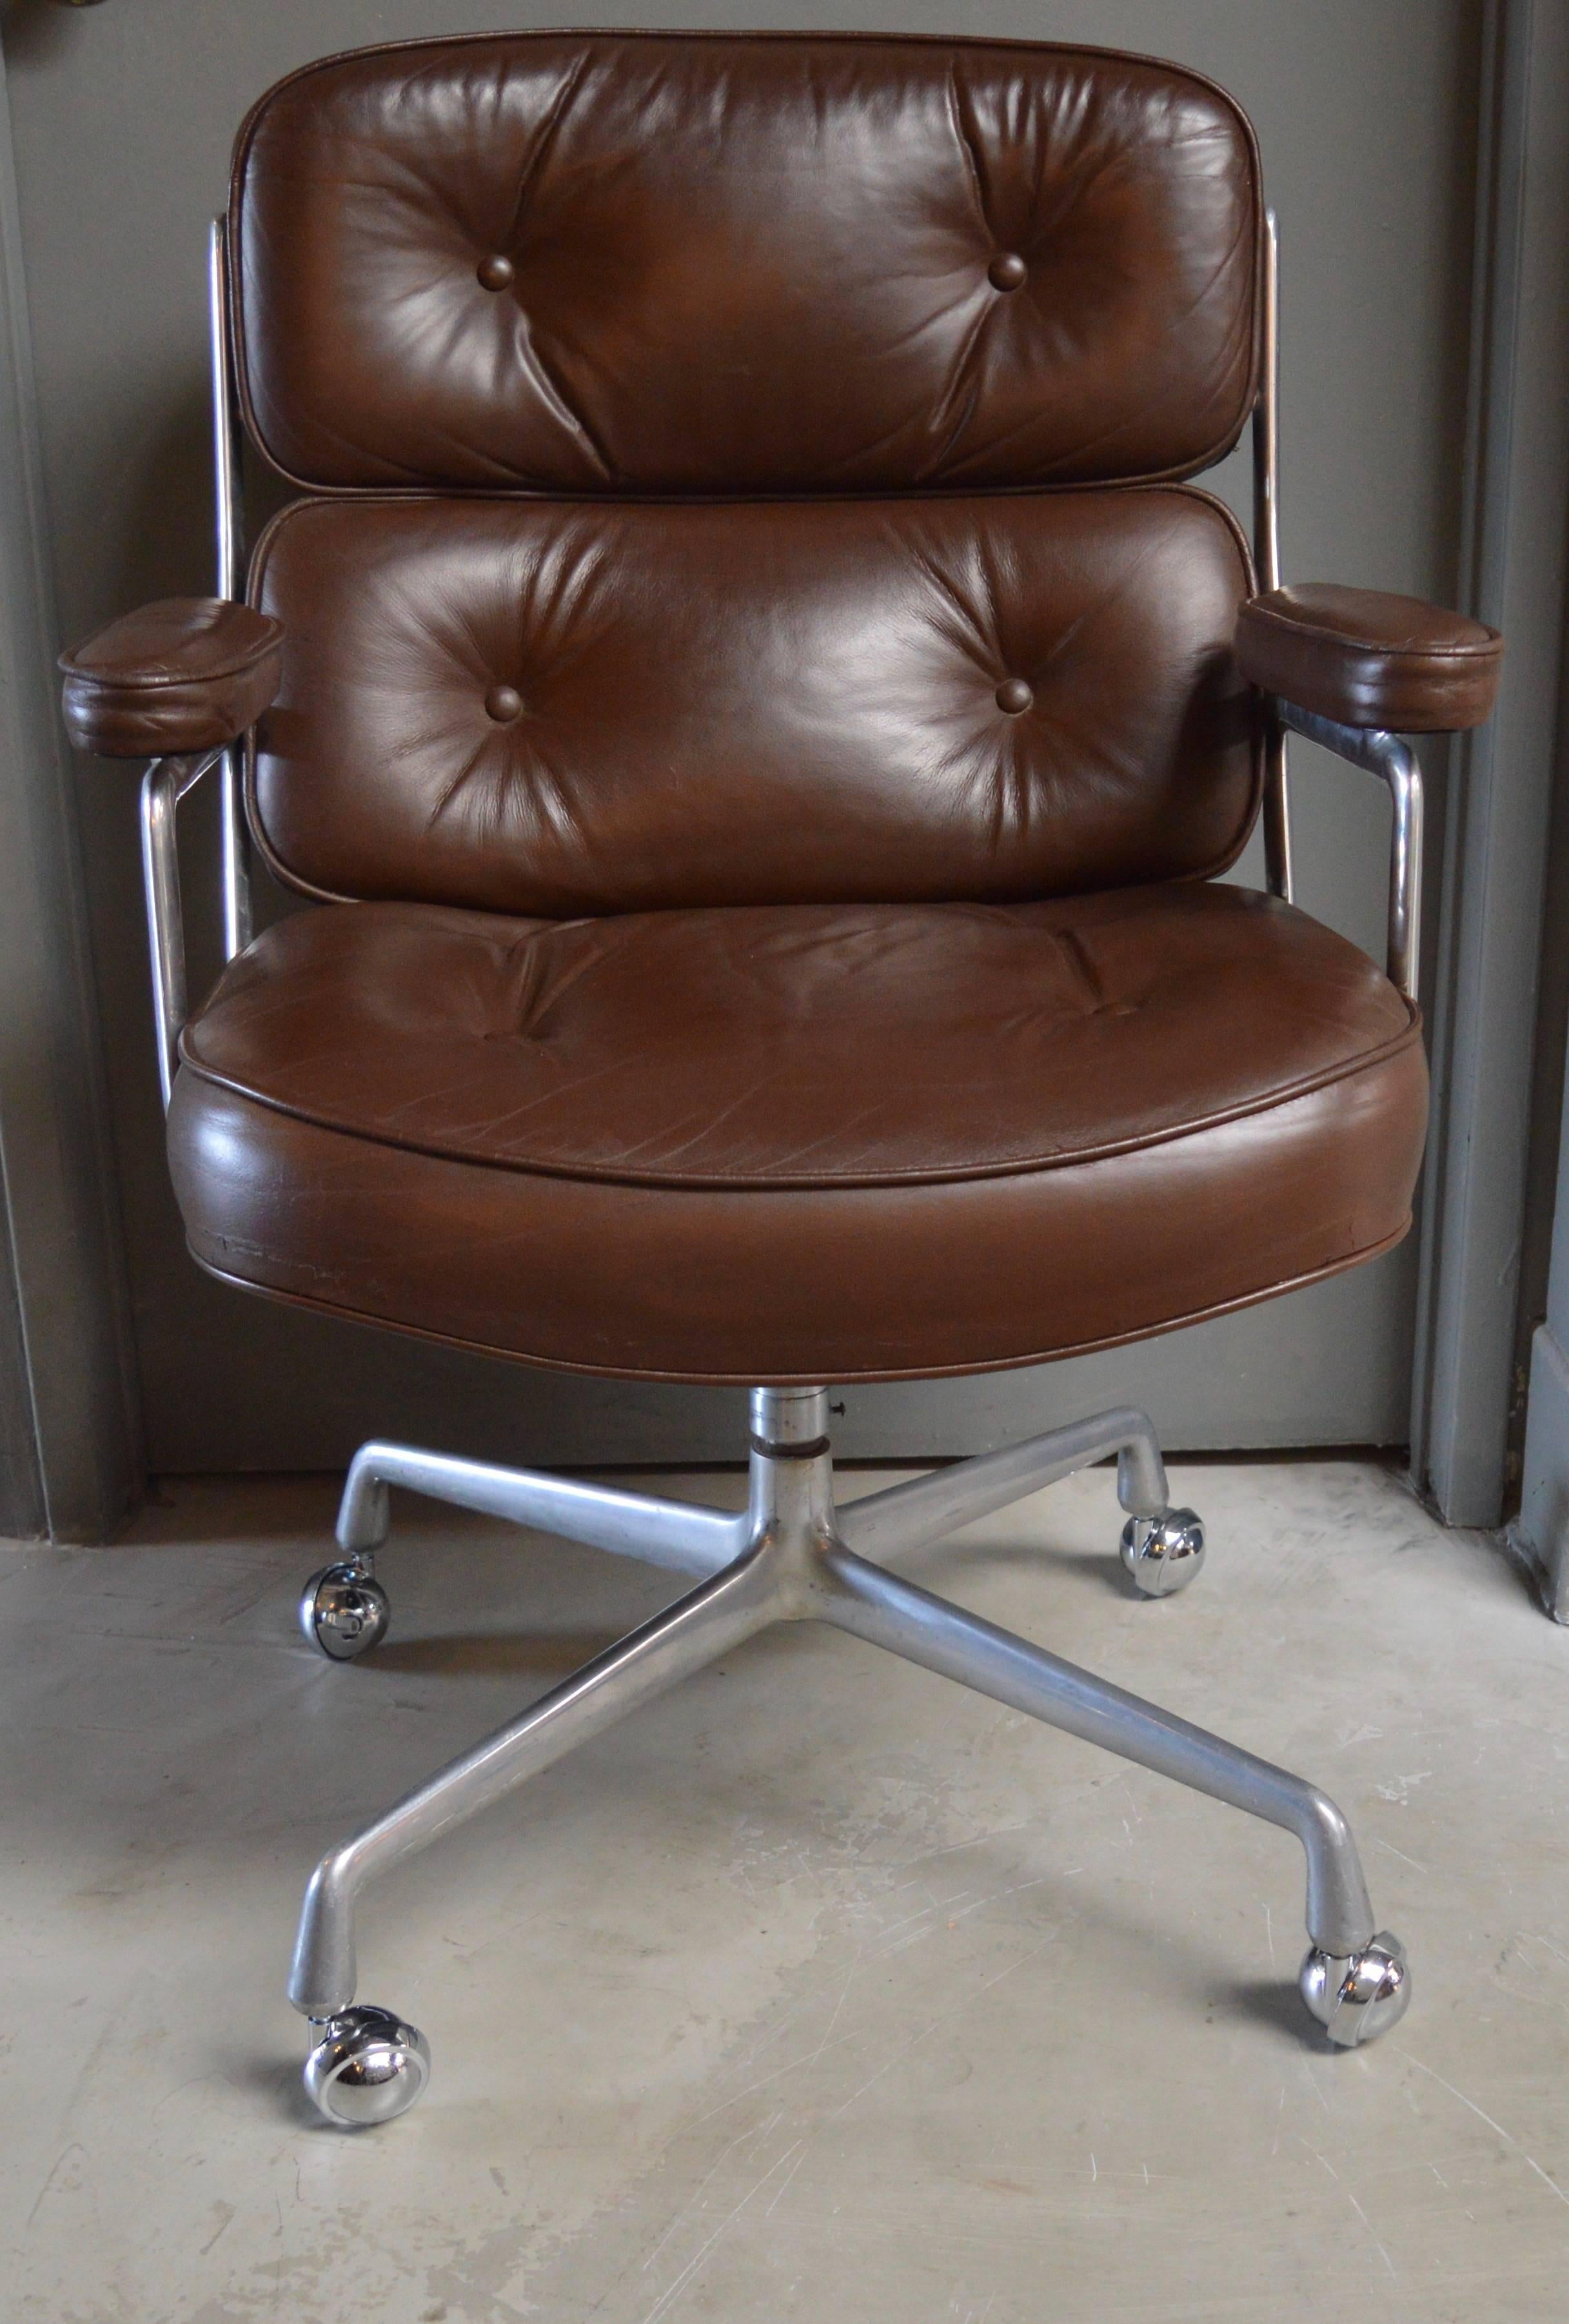 Toller alter Leder-Bürostuhl aus dem Time Life-Gebäude in New York. Datiert Feb' 24 1976 auf der Unterseite des Stuhls. Braunes Original-Leder in gutem Vintage-Zustand. Der Stuhl ist drehbar und neigbar.  Neue Rollen. Original-Aluminiumrahmen auch